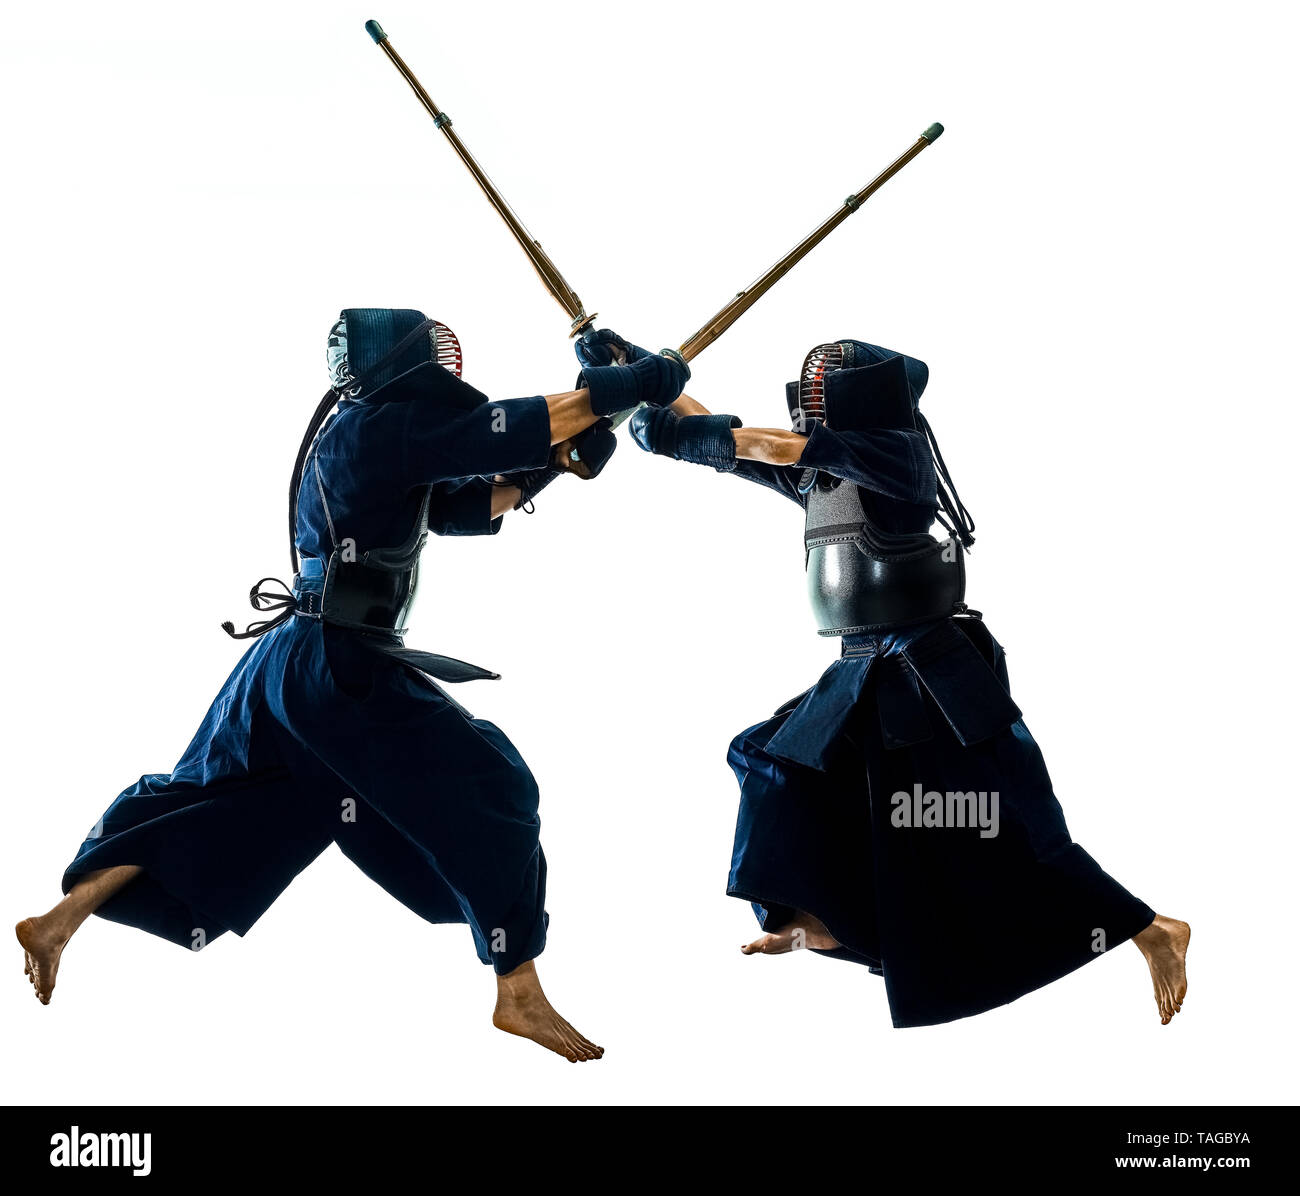 Deux combattants d'arts martiaux Kendo combat combat en silhouette isolated on white bacground Banque D'Images